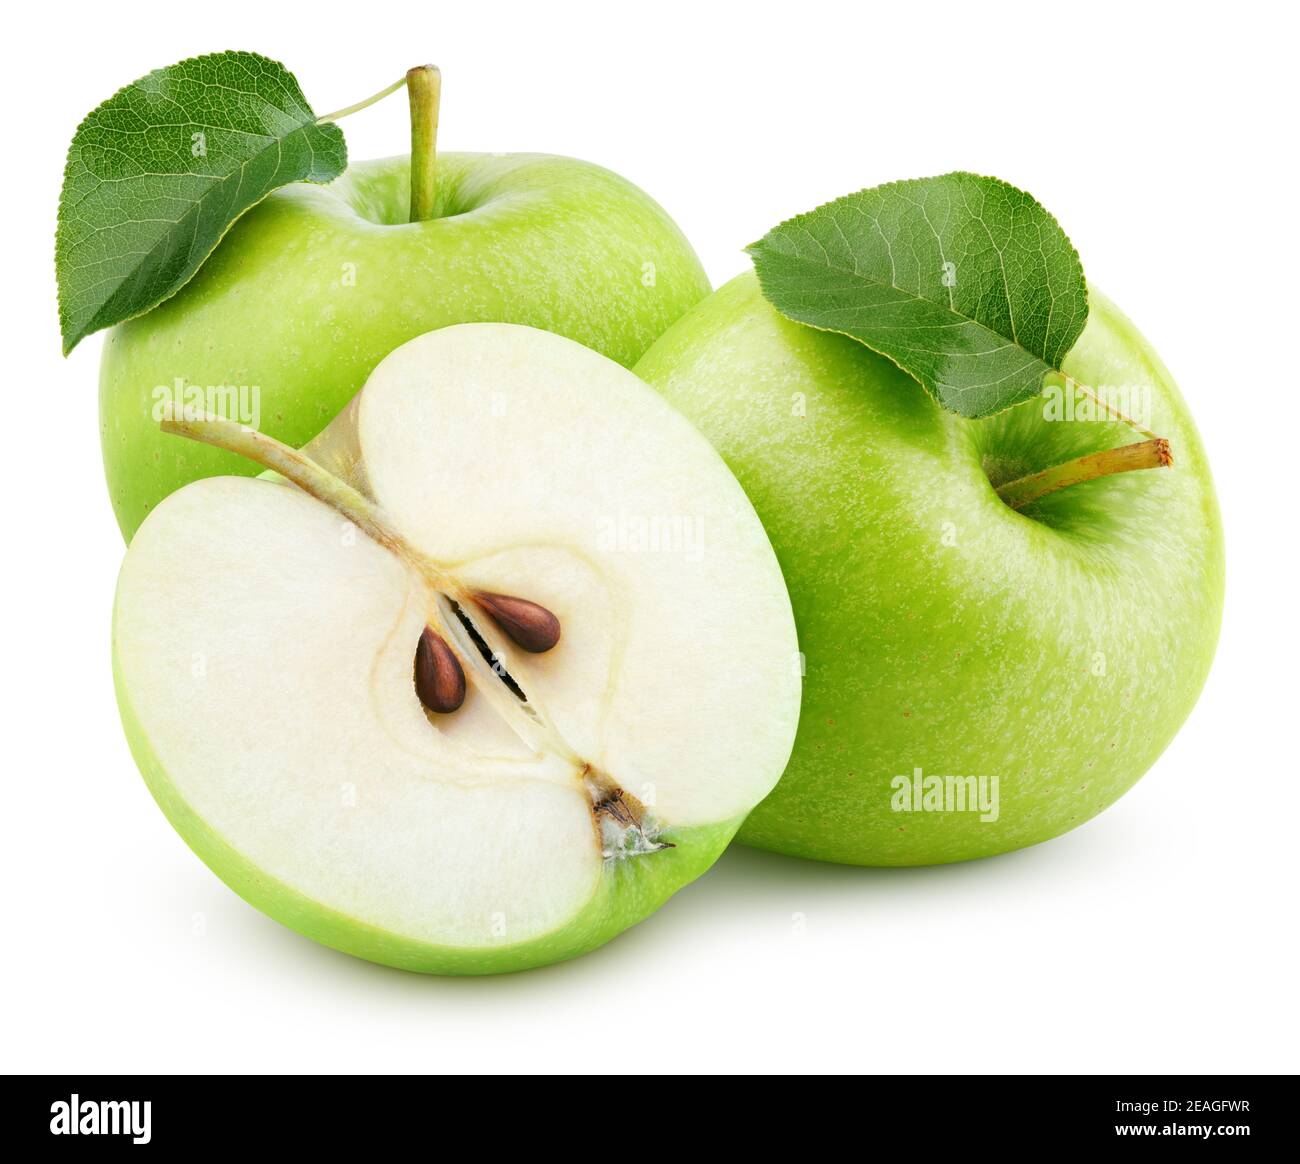 Gruppo di mele verdi mature con foglie di metà e verde isolate su sfondo bianco. Mele con percorso di taglio. Profondità di campo completa Foto Stock